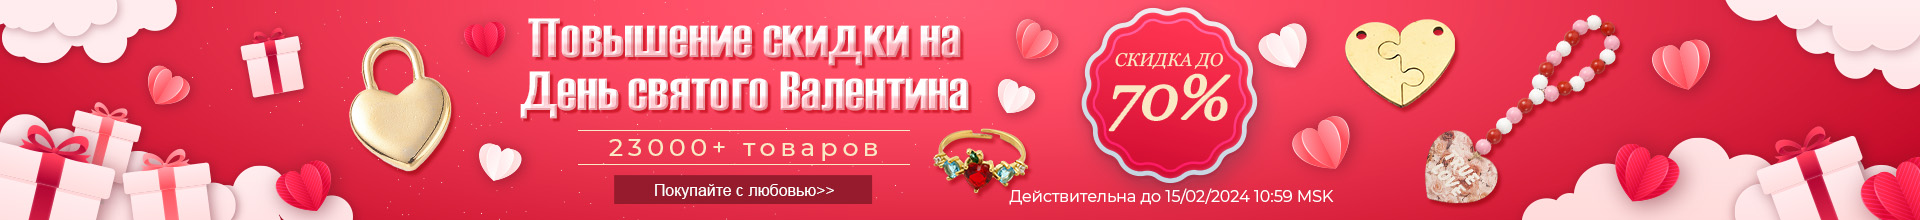 Повышение скидки на День святого Валентина СКИДКА ДО 70%